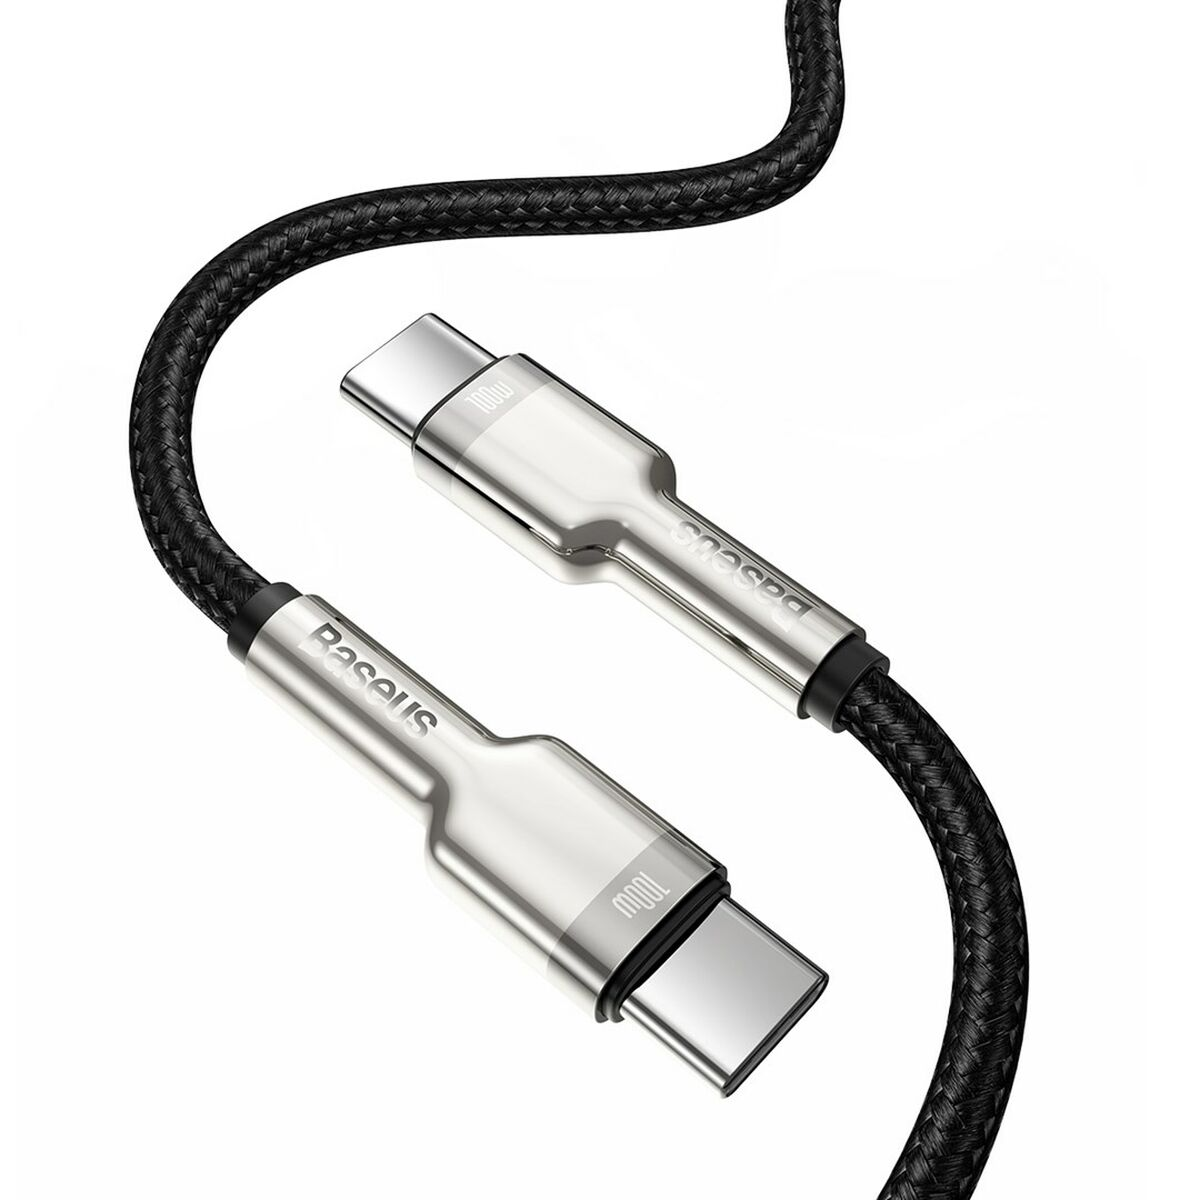 BASEUS CATJK-C01 USB Kabel C